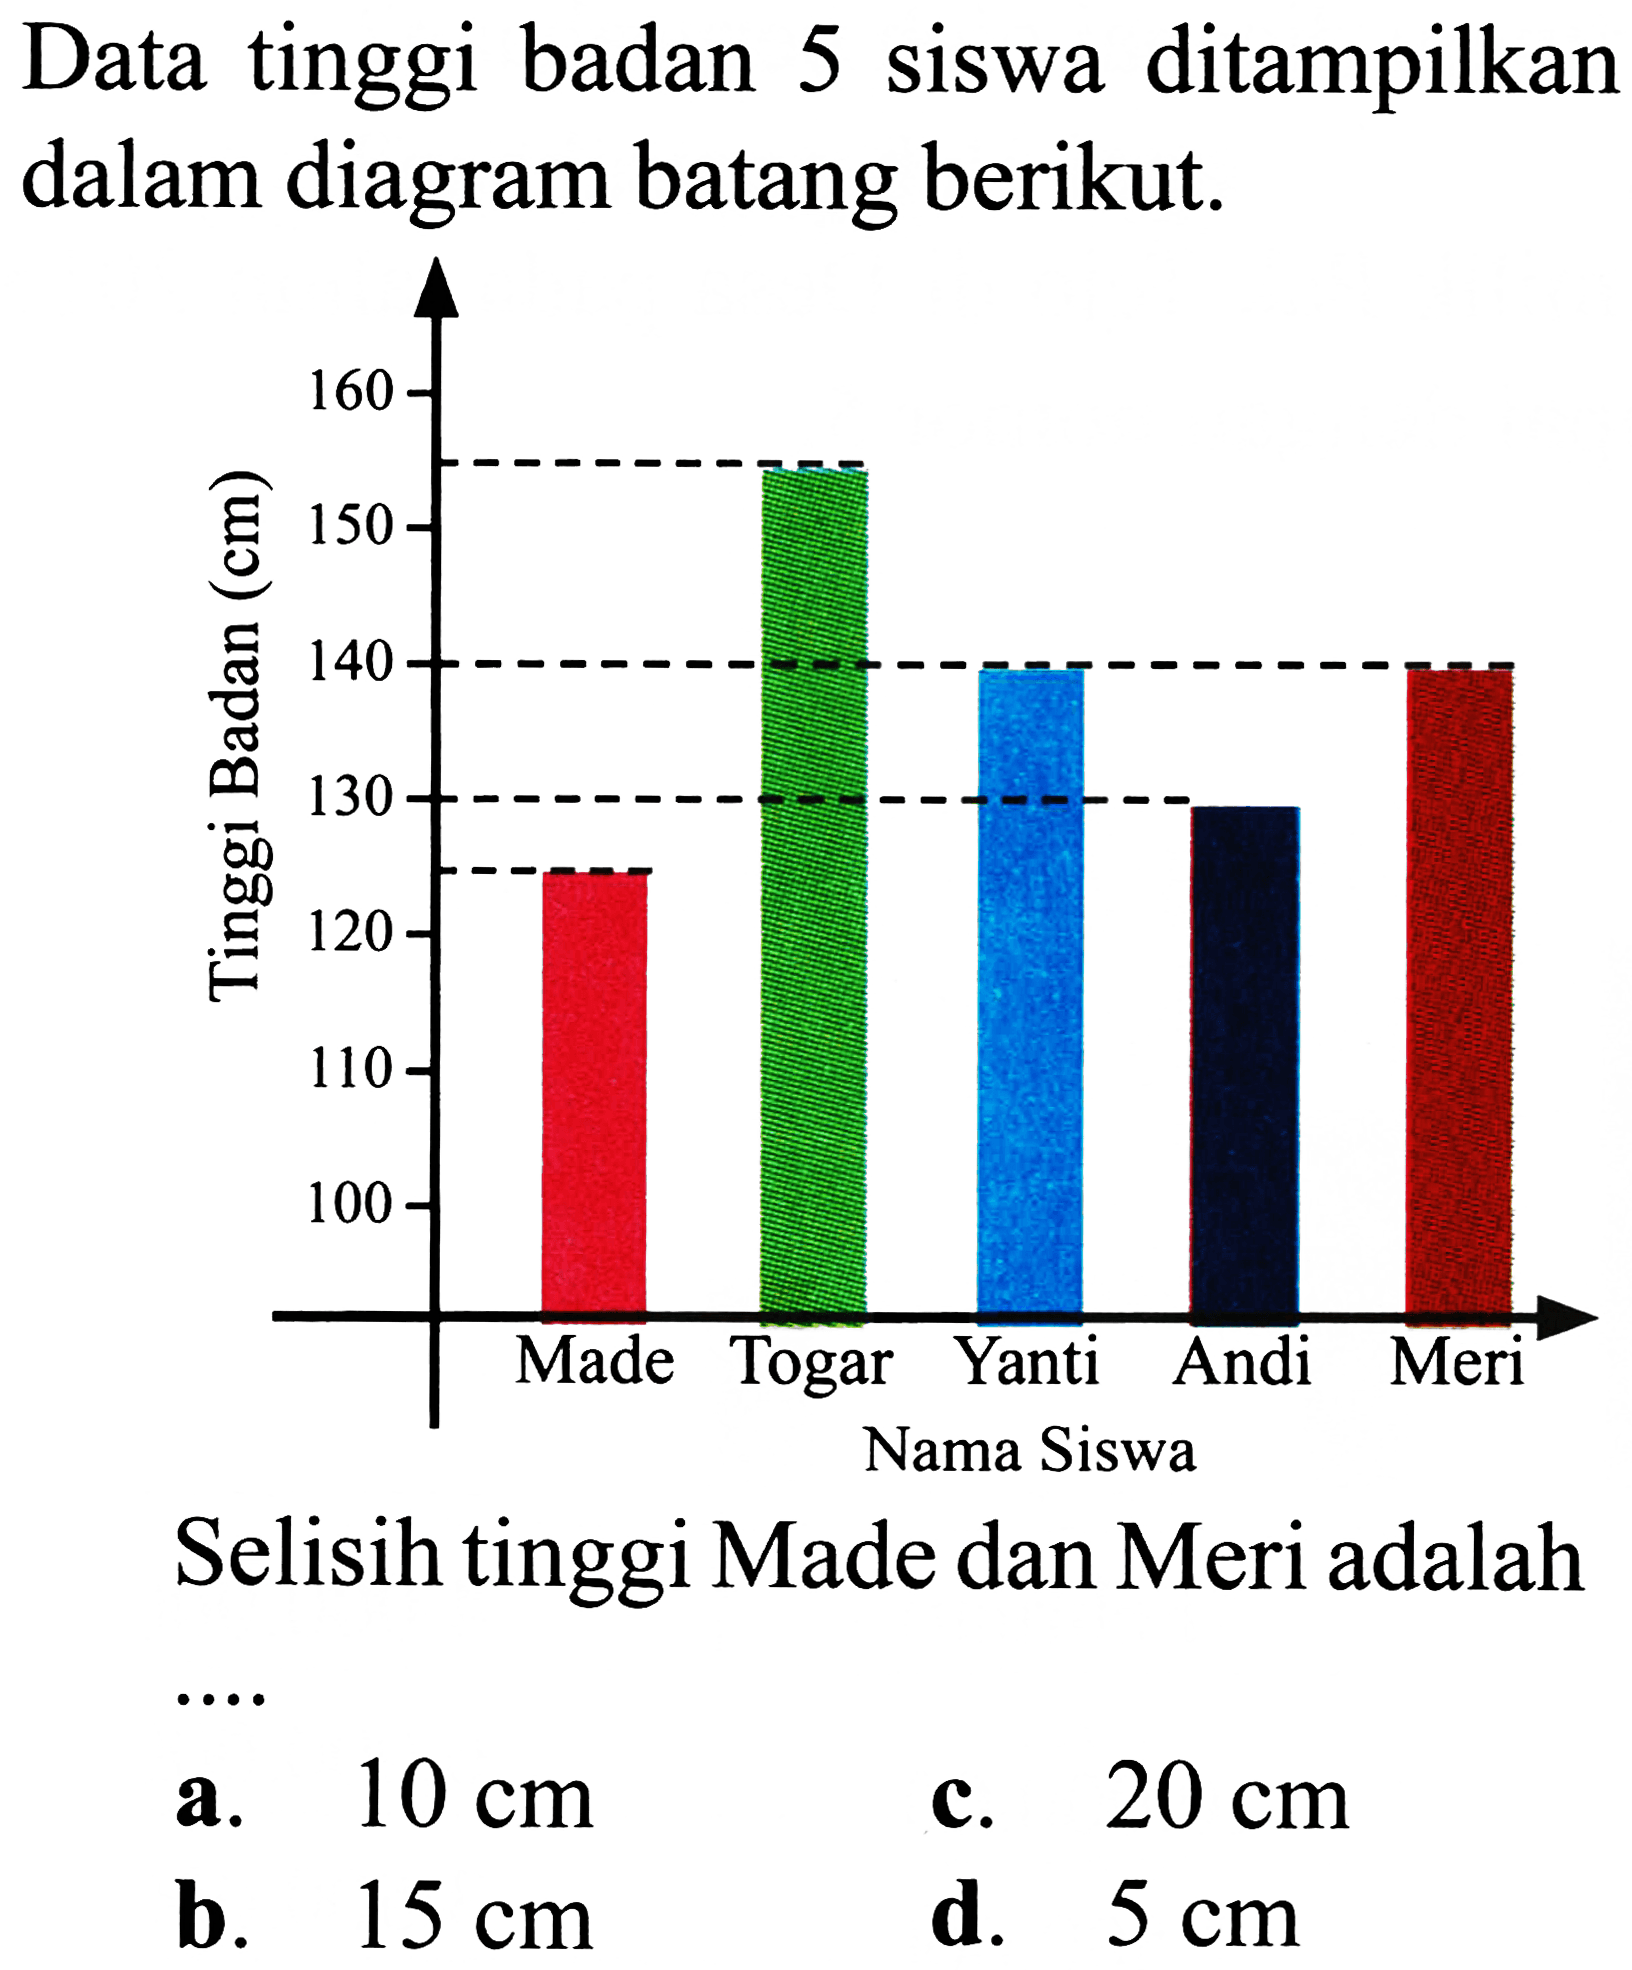 Data tinggi badan 5 siswa ditampilkan dalam diagram batang berikut.

Selisih tinggi Made dan Meri adalah
a.  10 cm 
c.  20 cm 
b.  15 cm 
d.  5 cm 